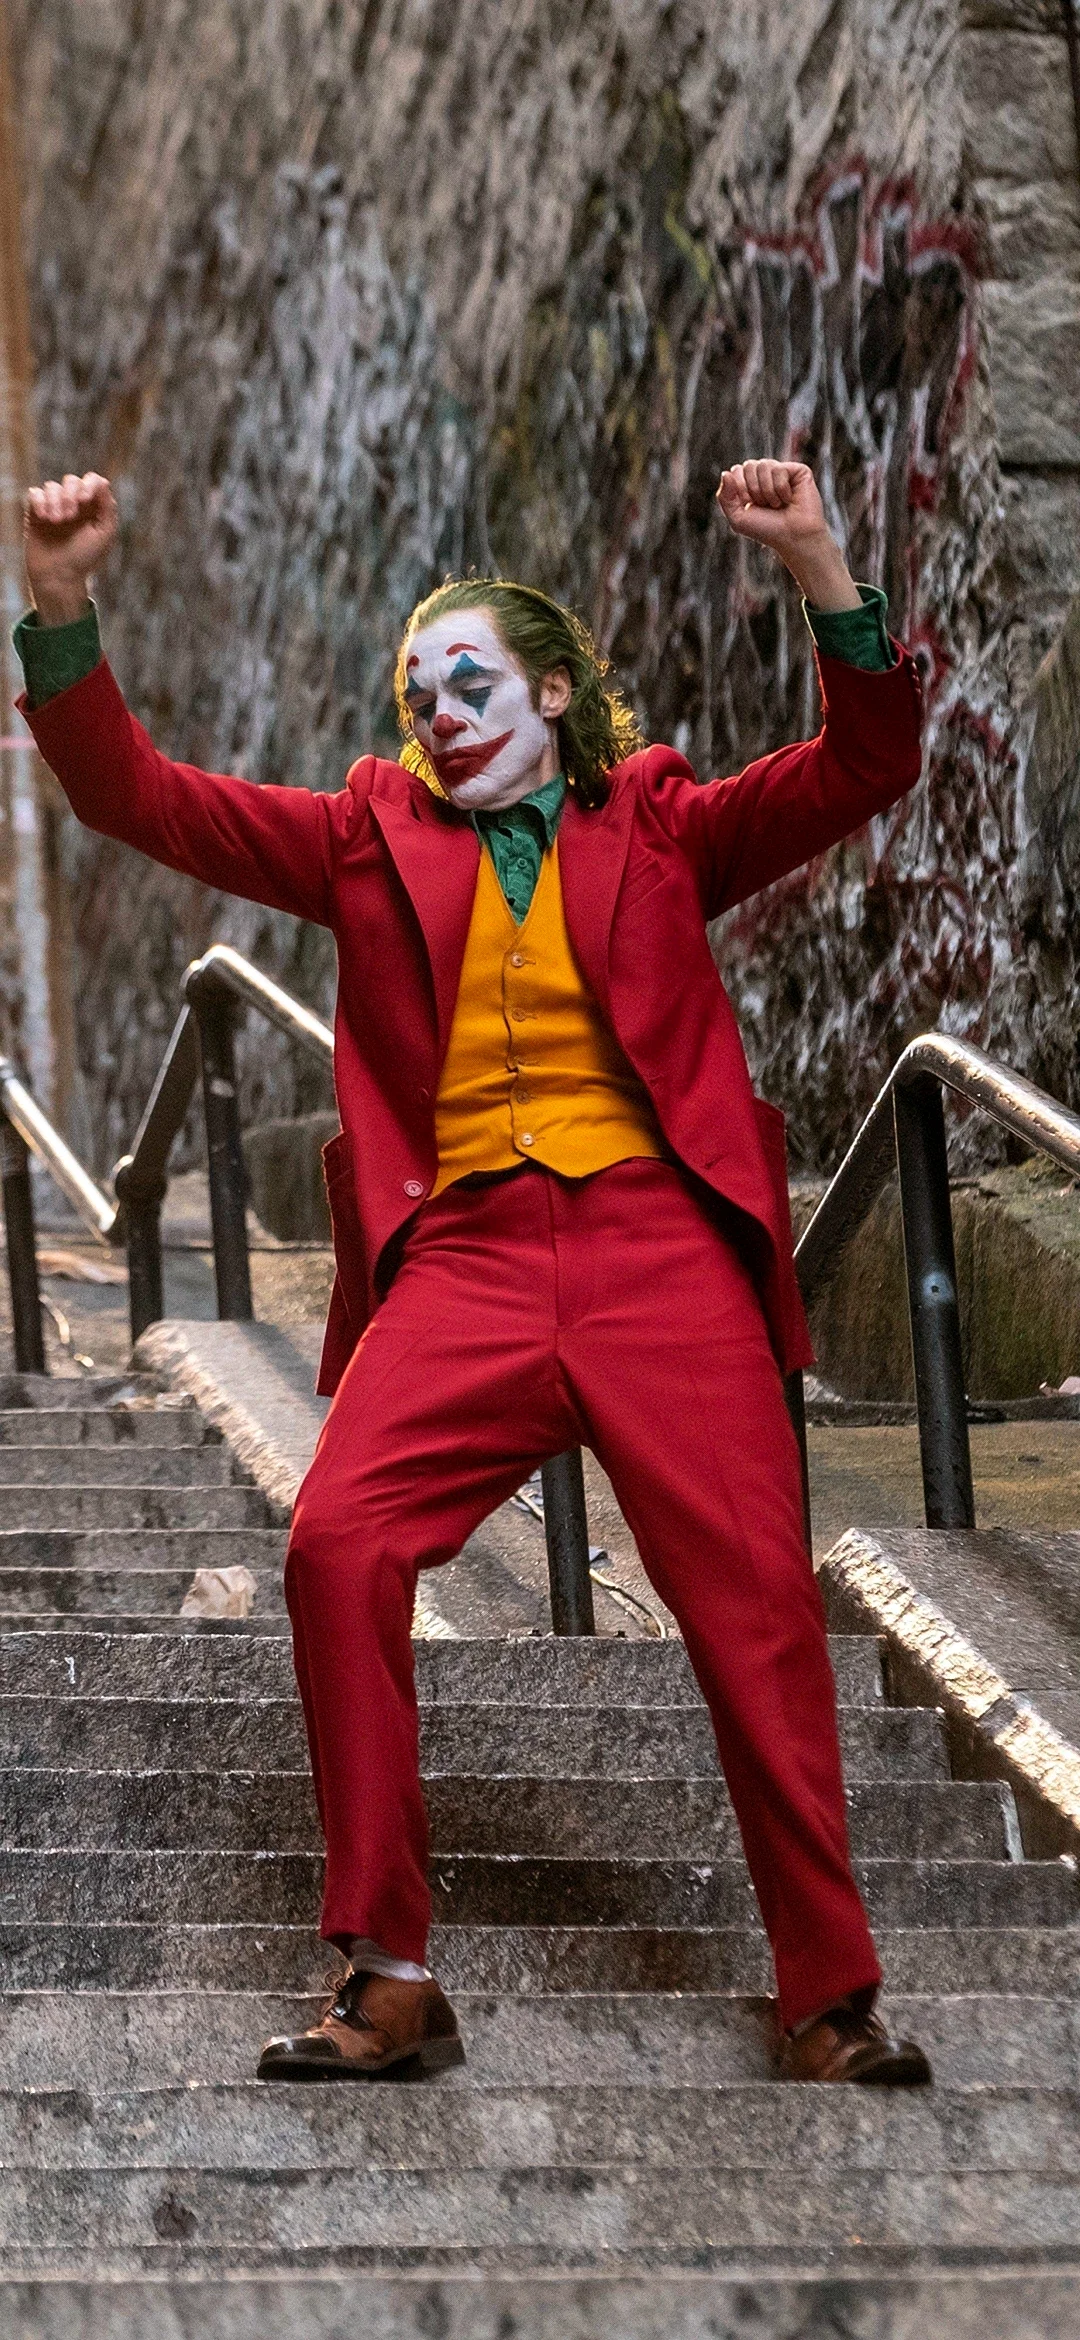 Joaquin Phoenix In Joker Wallpaper for iPhone 12 mini